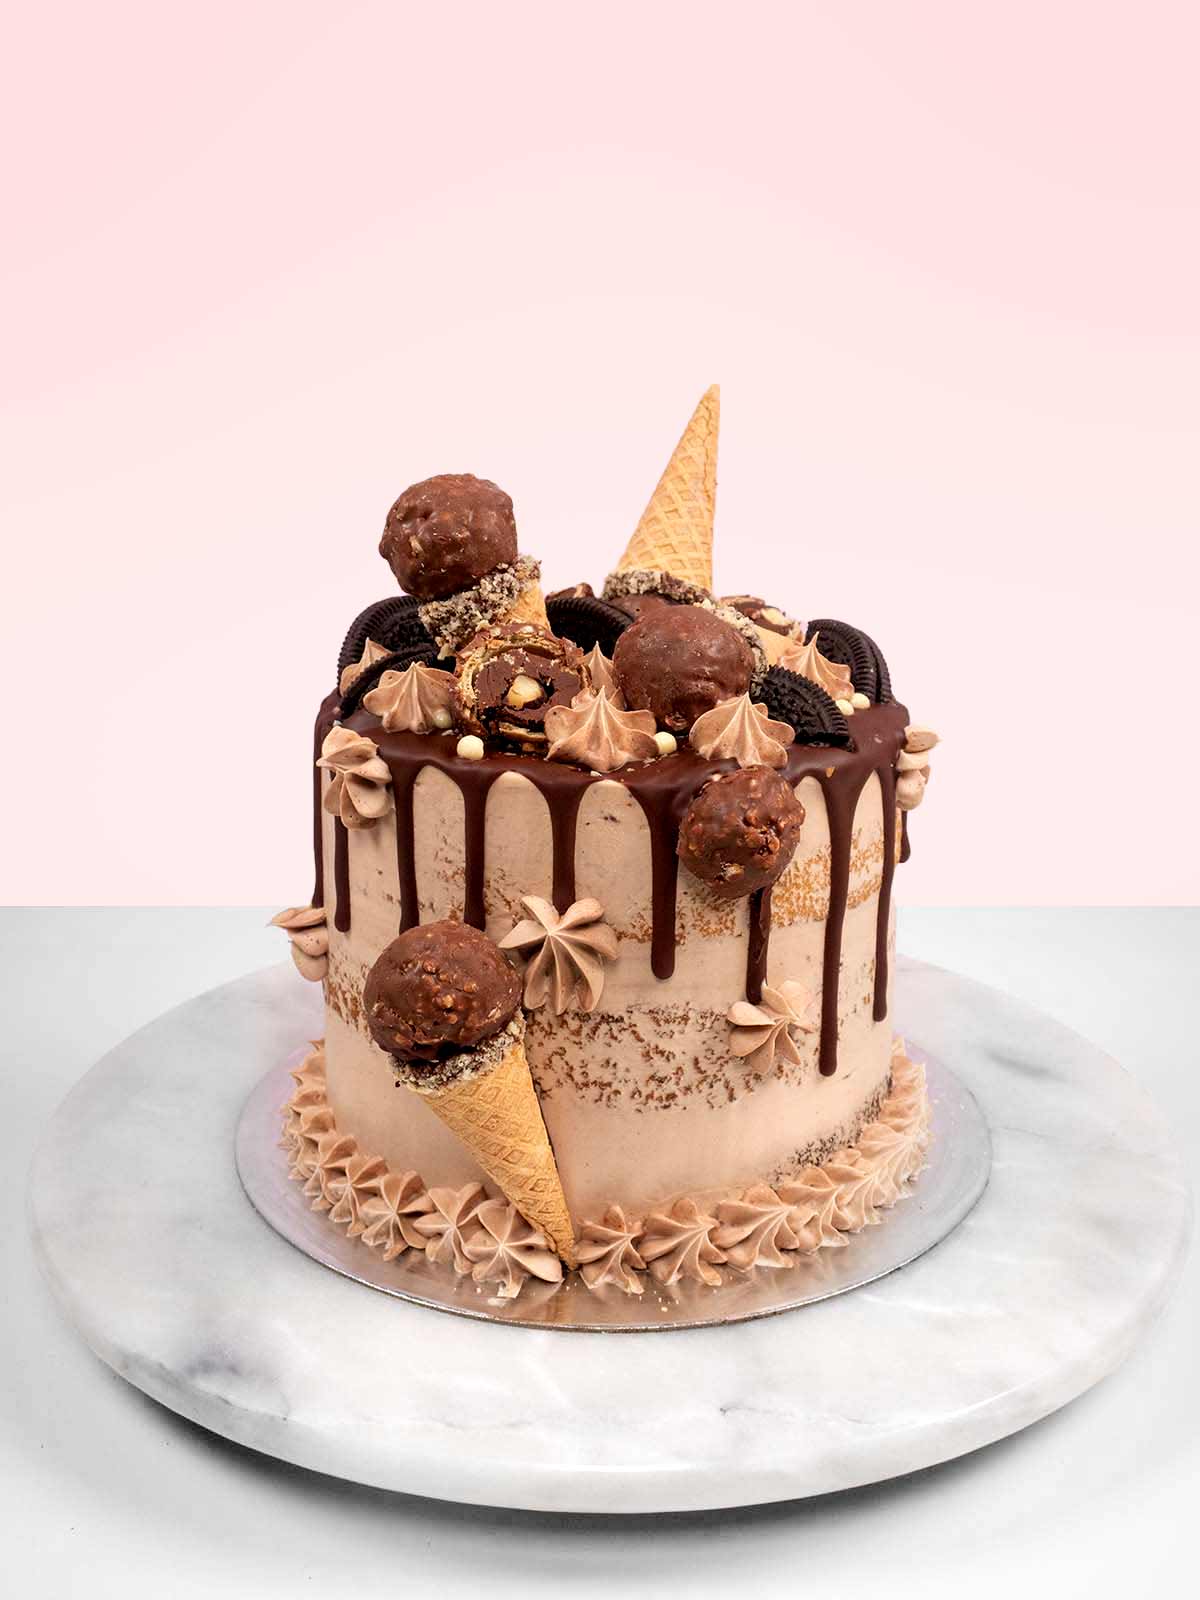 Happy Nutella birthday cake